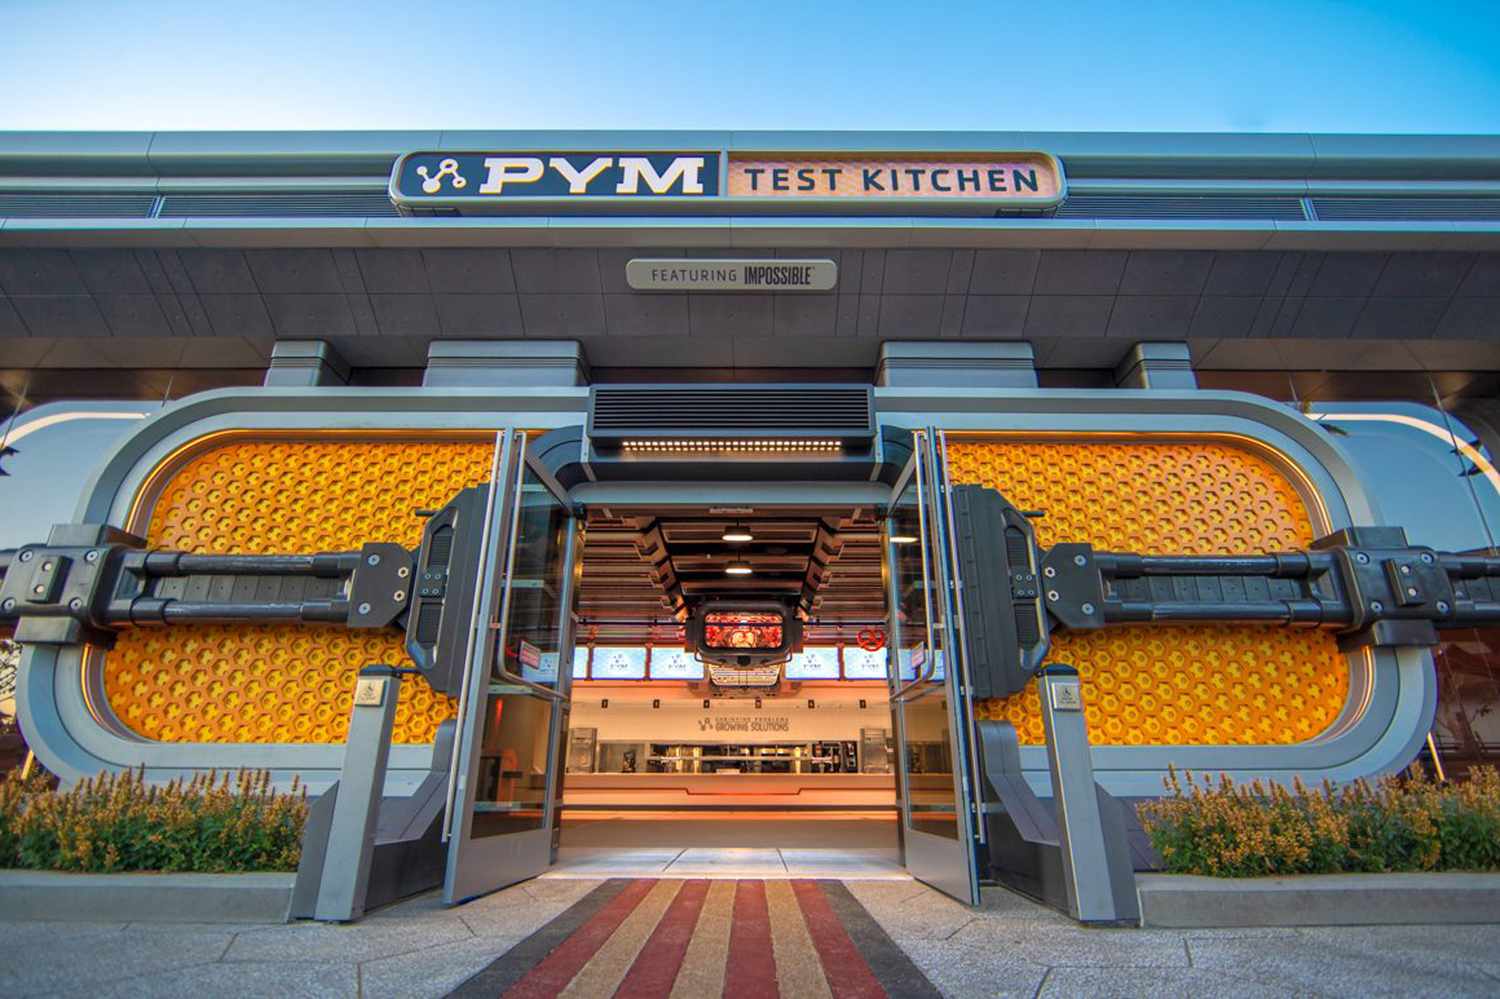 Pym Test Kitchen au Avengers Campus du Disney California Adventure Park (commande mobile disponible)